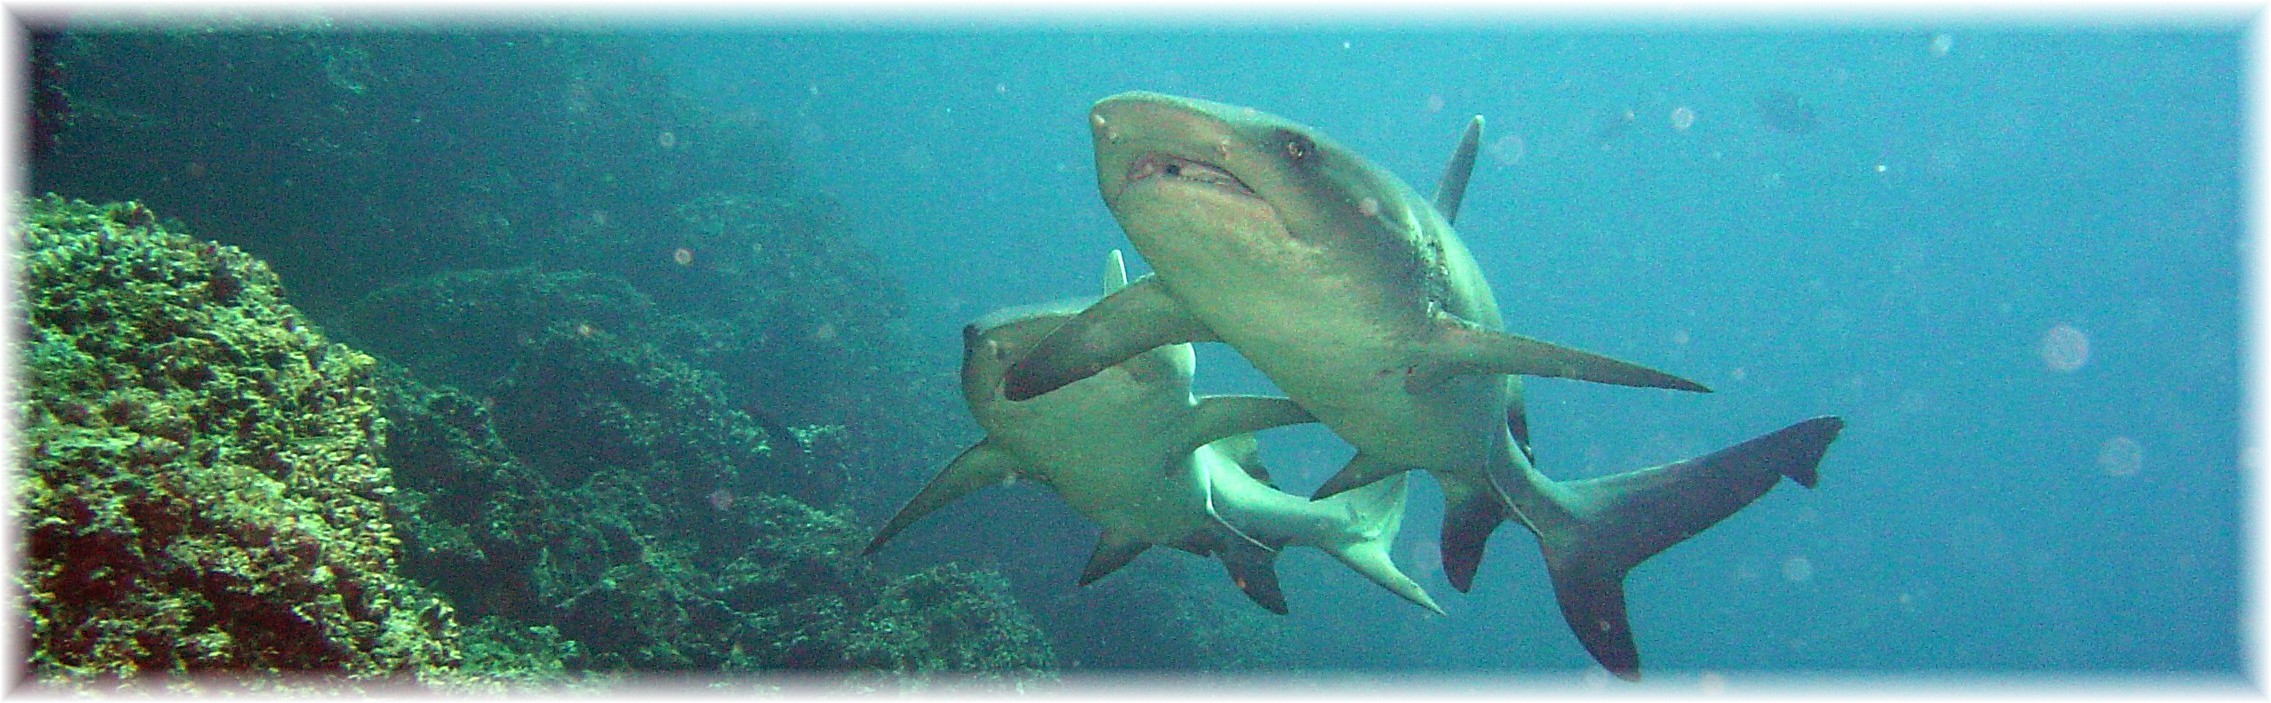 White tip reef shark Galapagos Islands